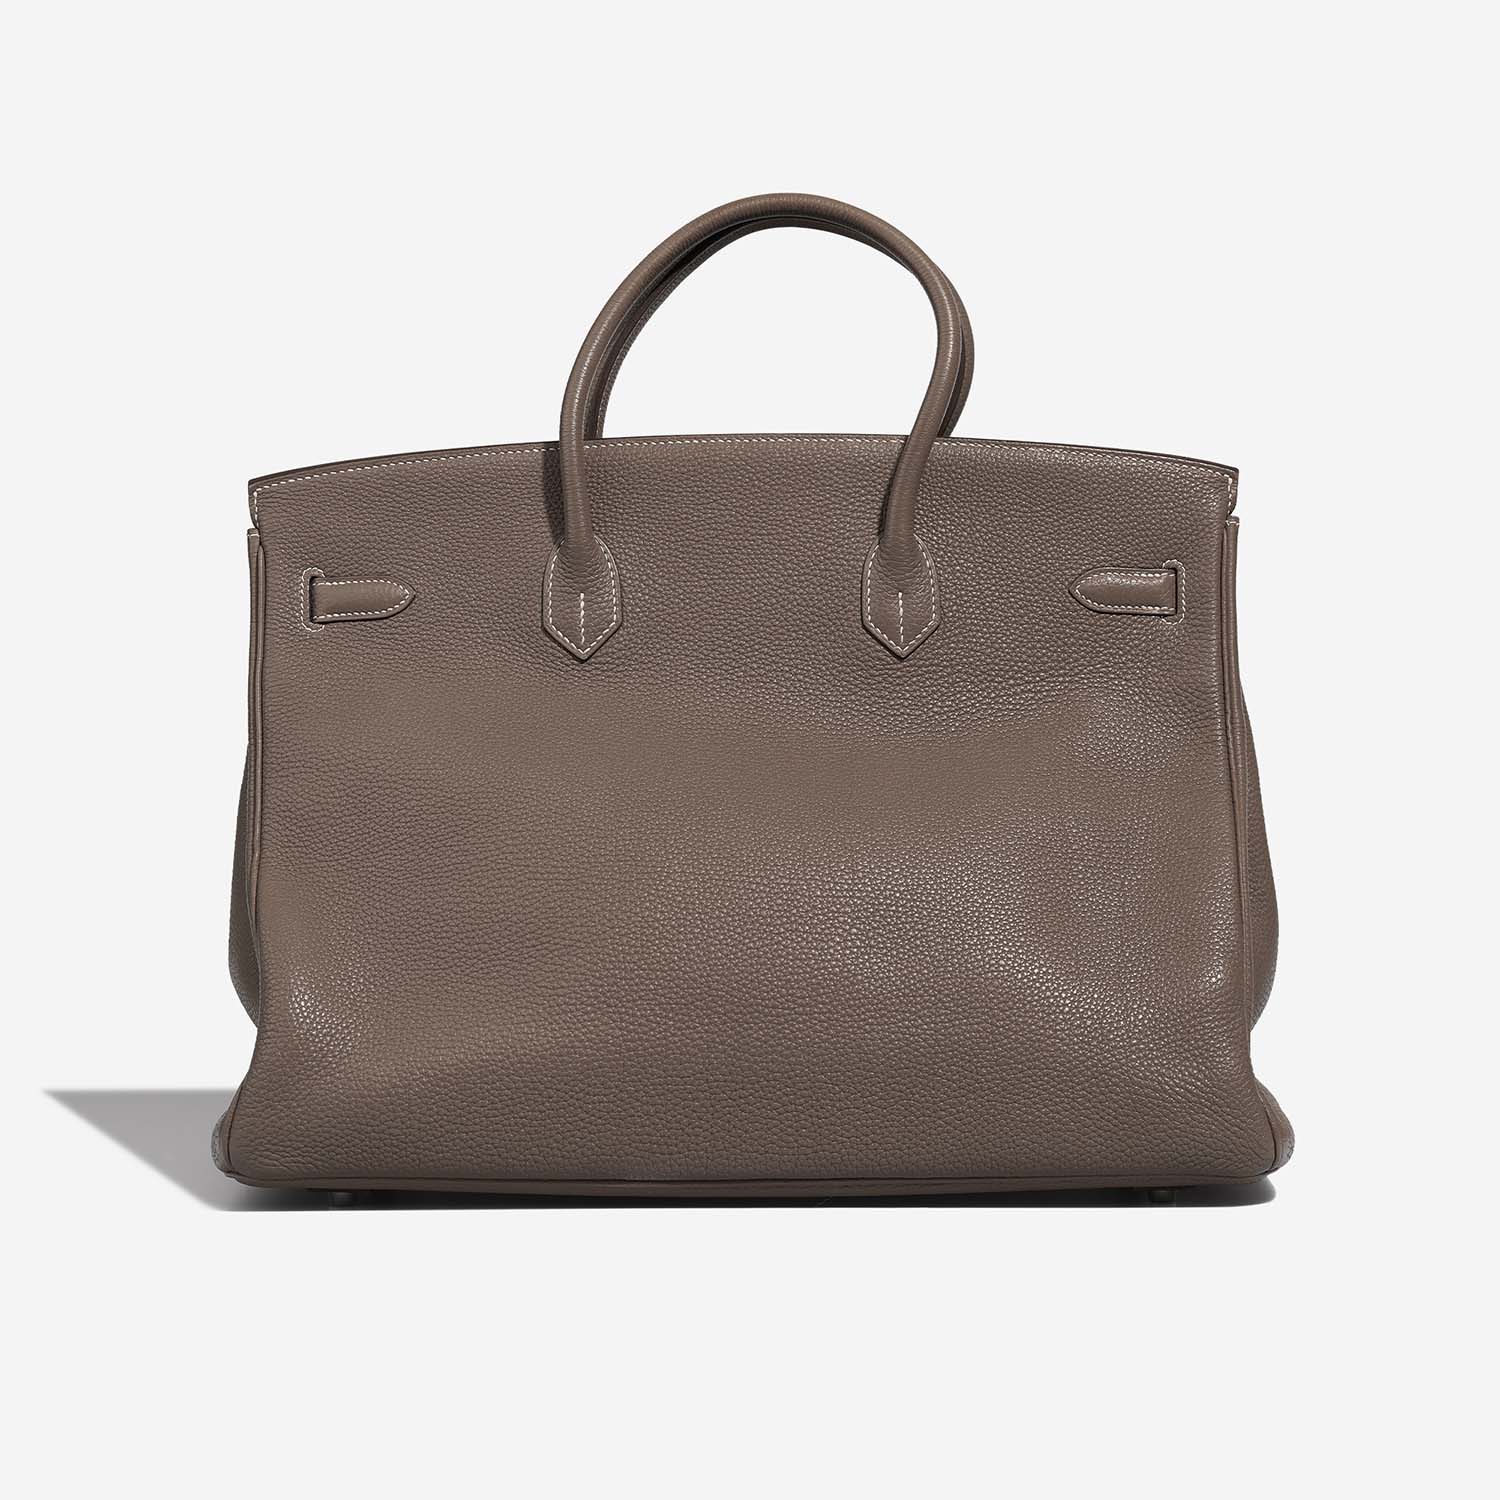 Hermès Birkin 40 Etoupe Back | Verkaufen Sie Ihre Designertasche auf Saclab.com